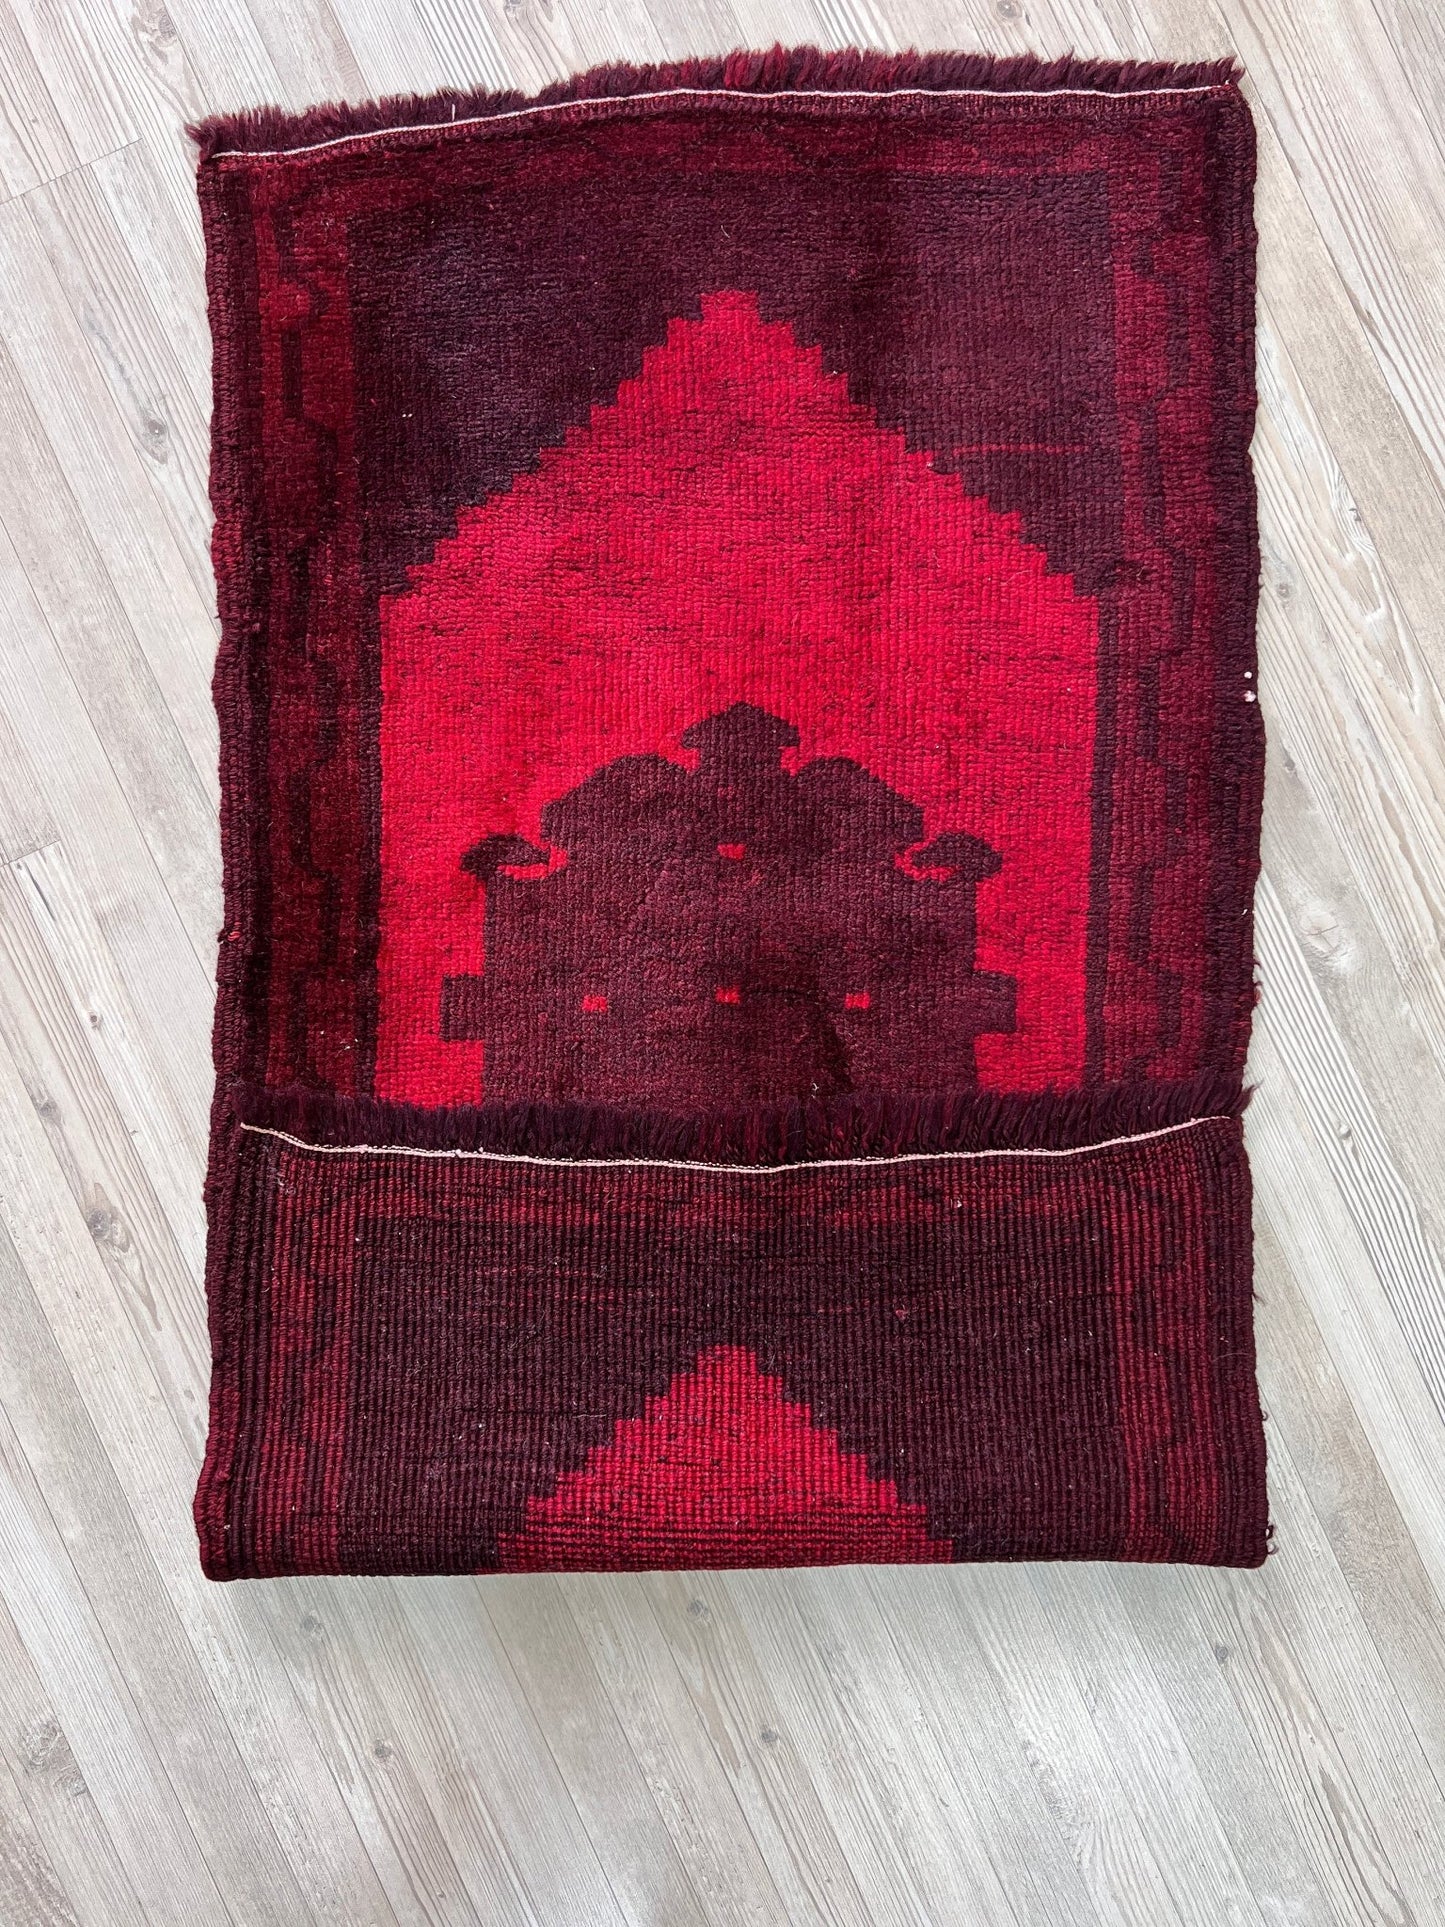 red handmade wool turkish mini rug bathmat doormat. Rug shop san francisco bay area.